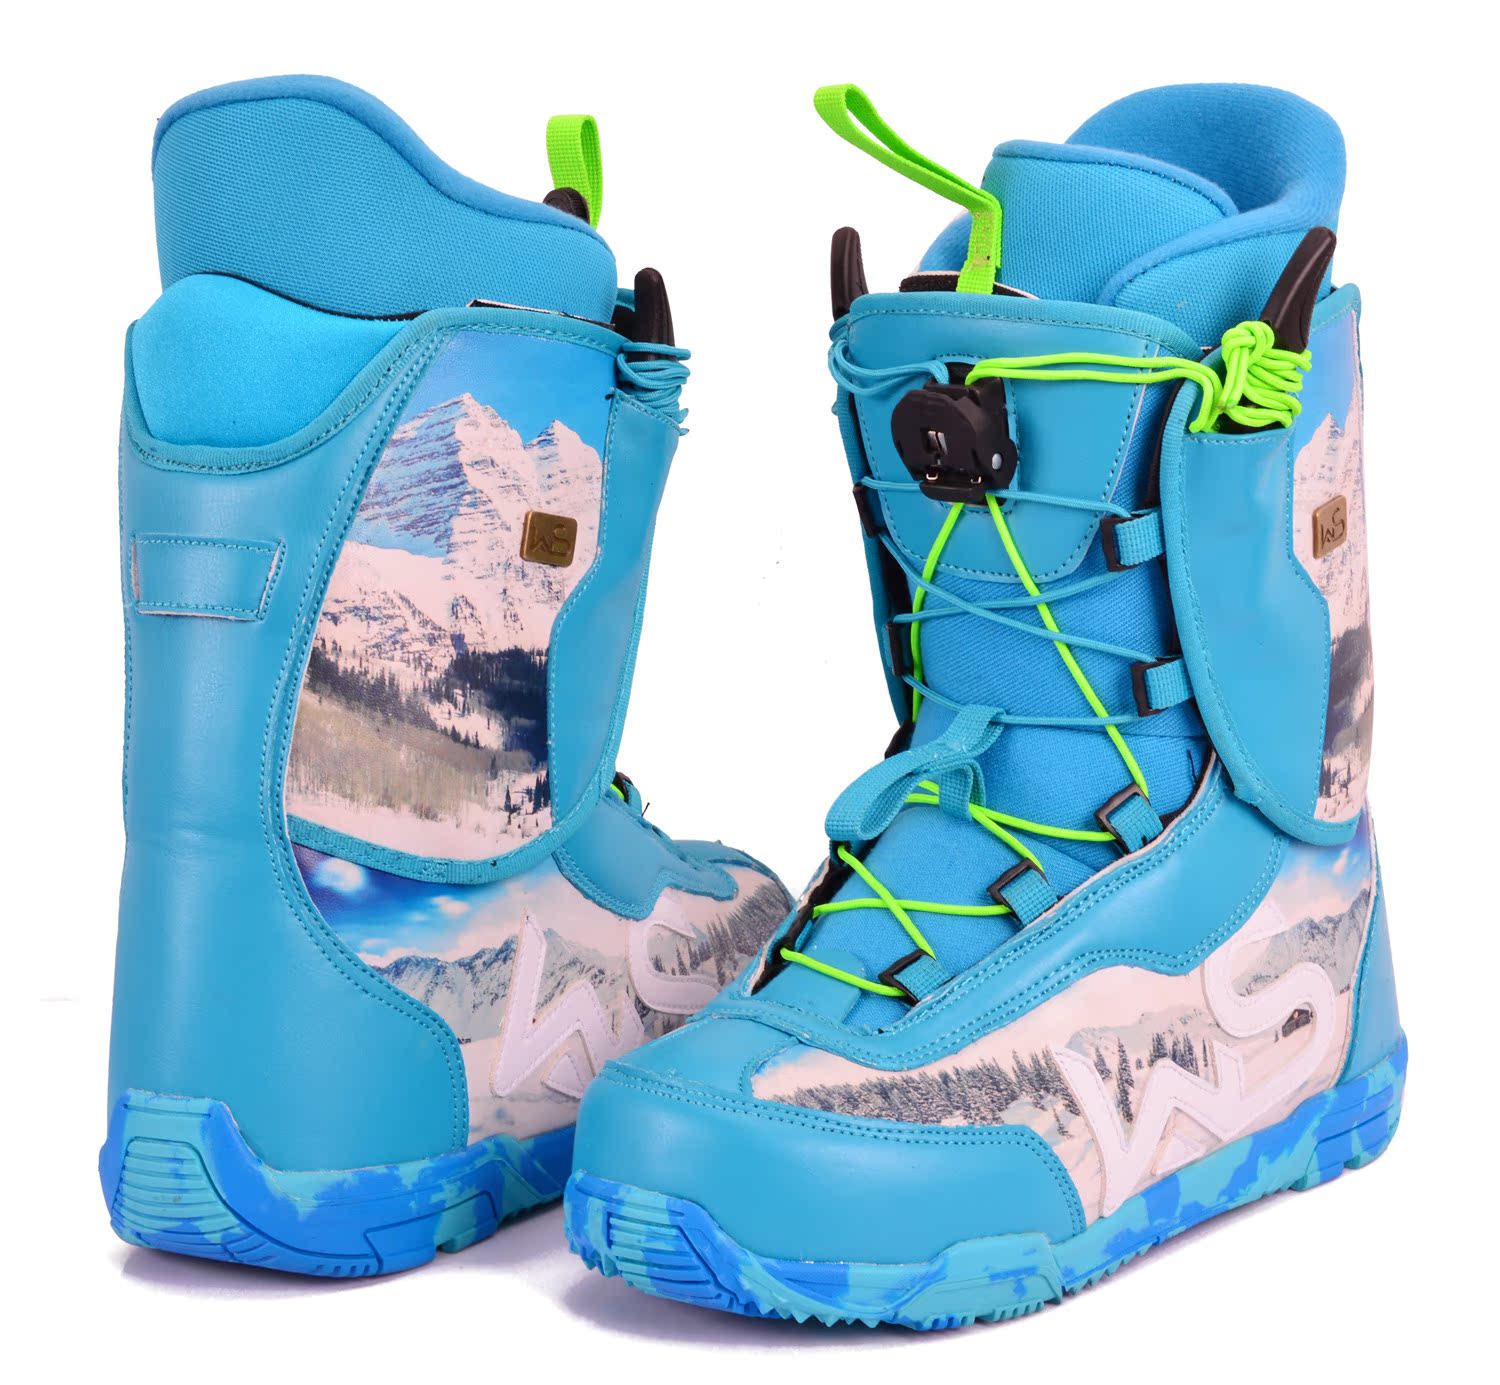 2015年 多色彩 sage 快速鞋带款 湖蓝色单板滑雪鞋